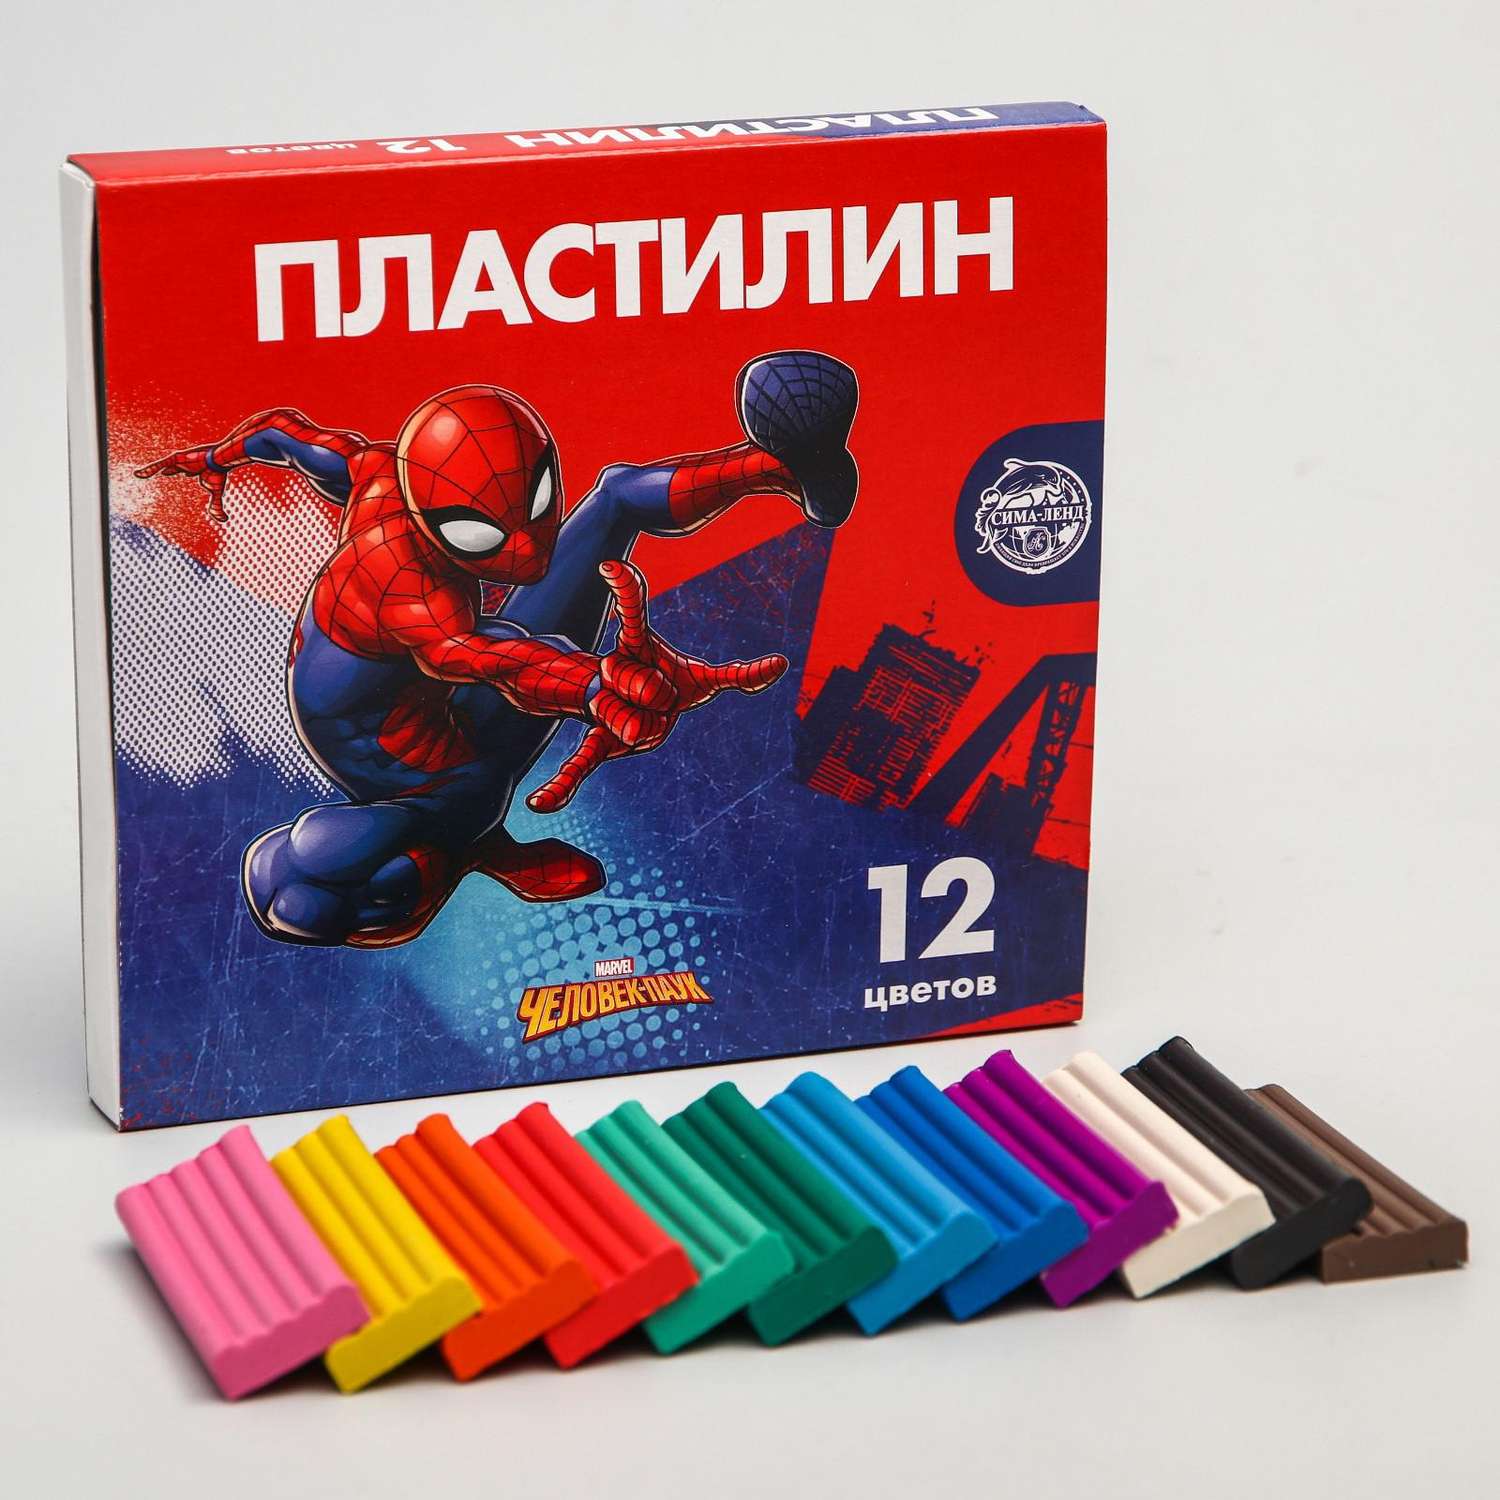 Пластилин MARVEL 12 цветов 180 г «Супергерой» Человек-паук - фото 1